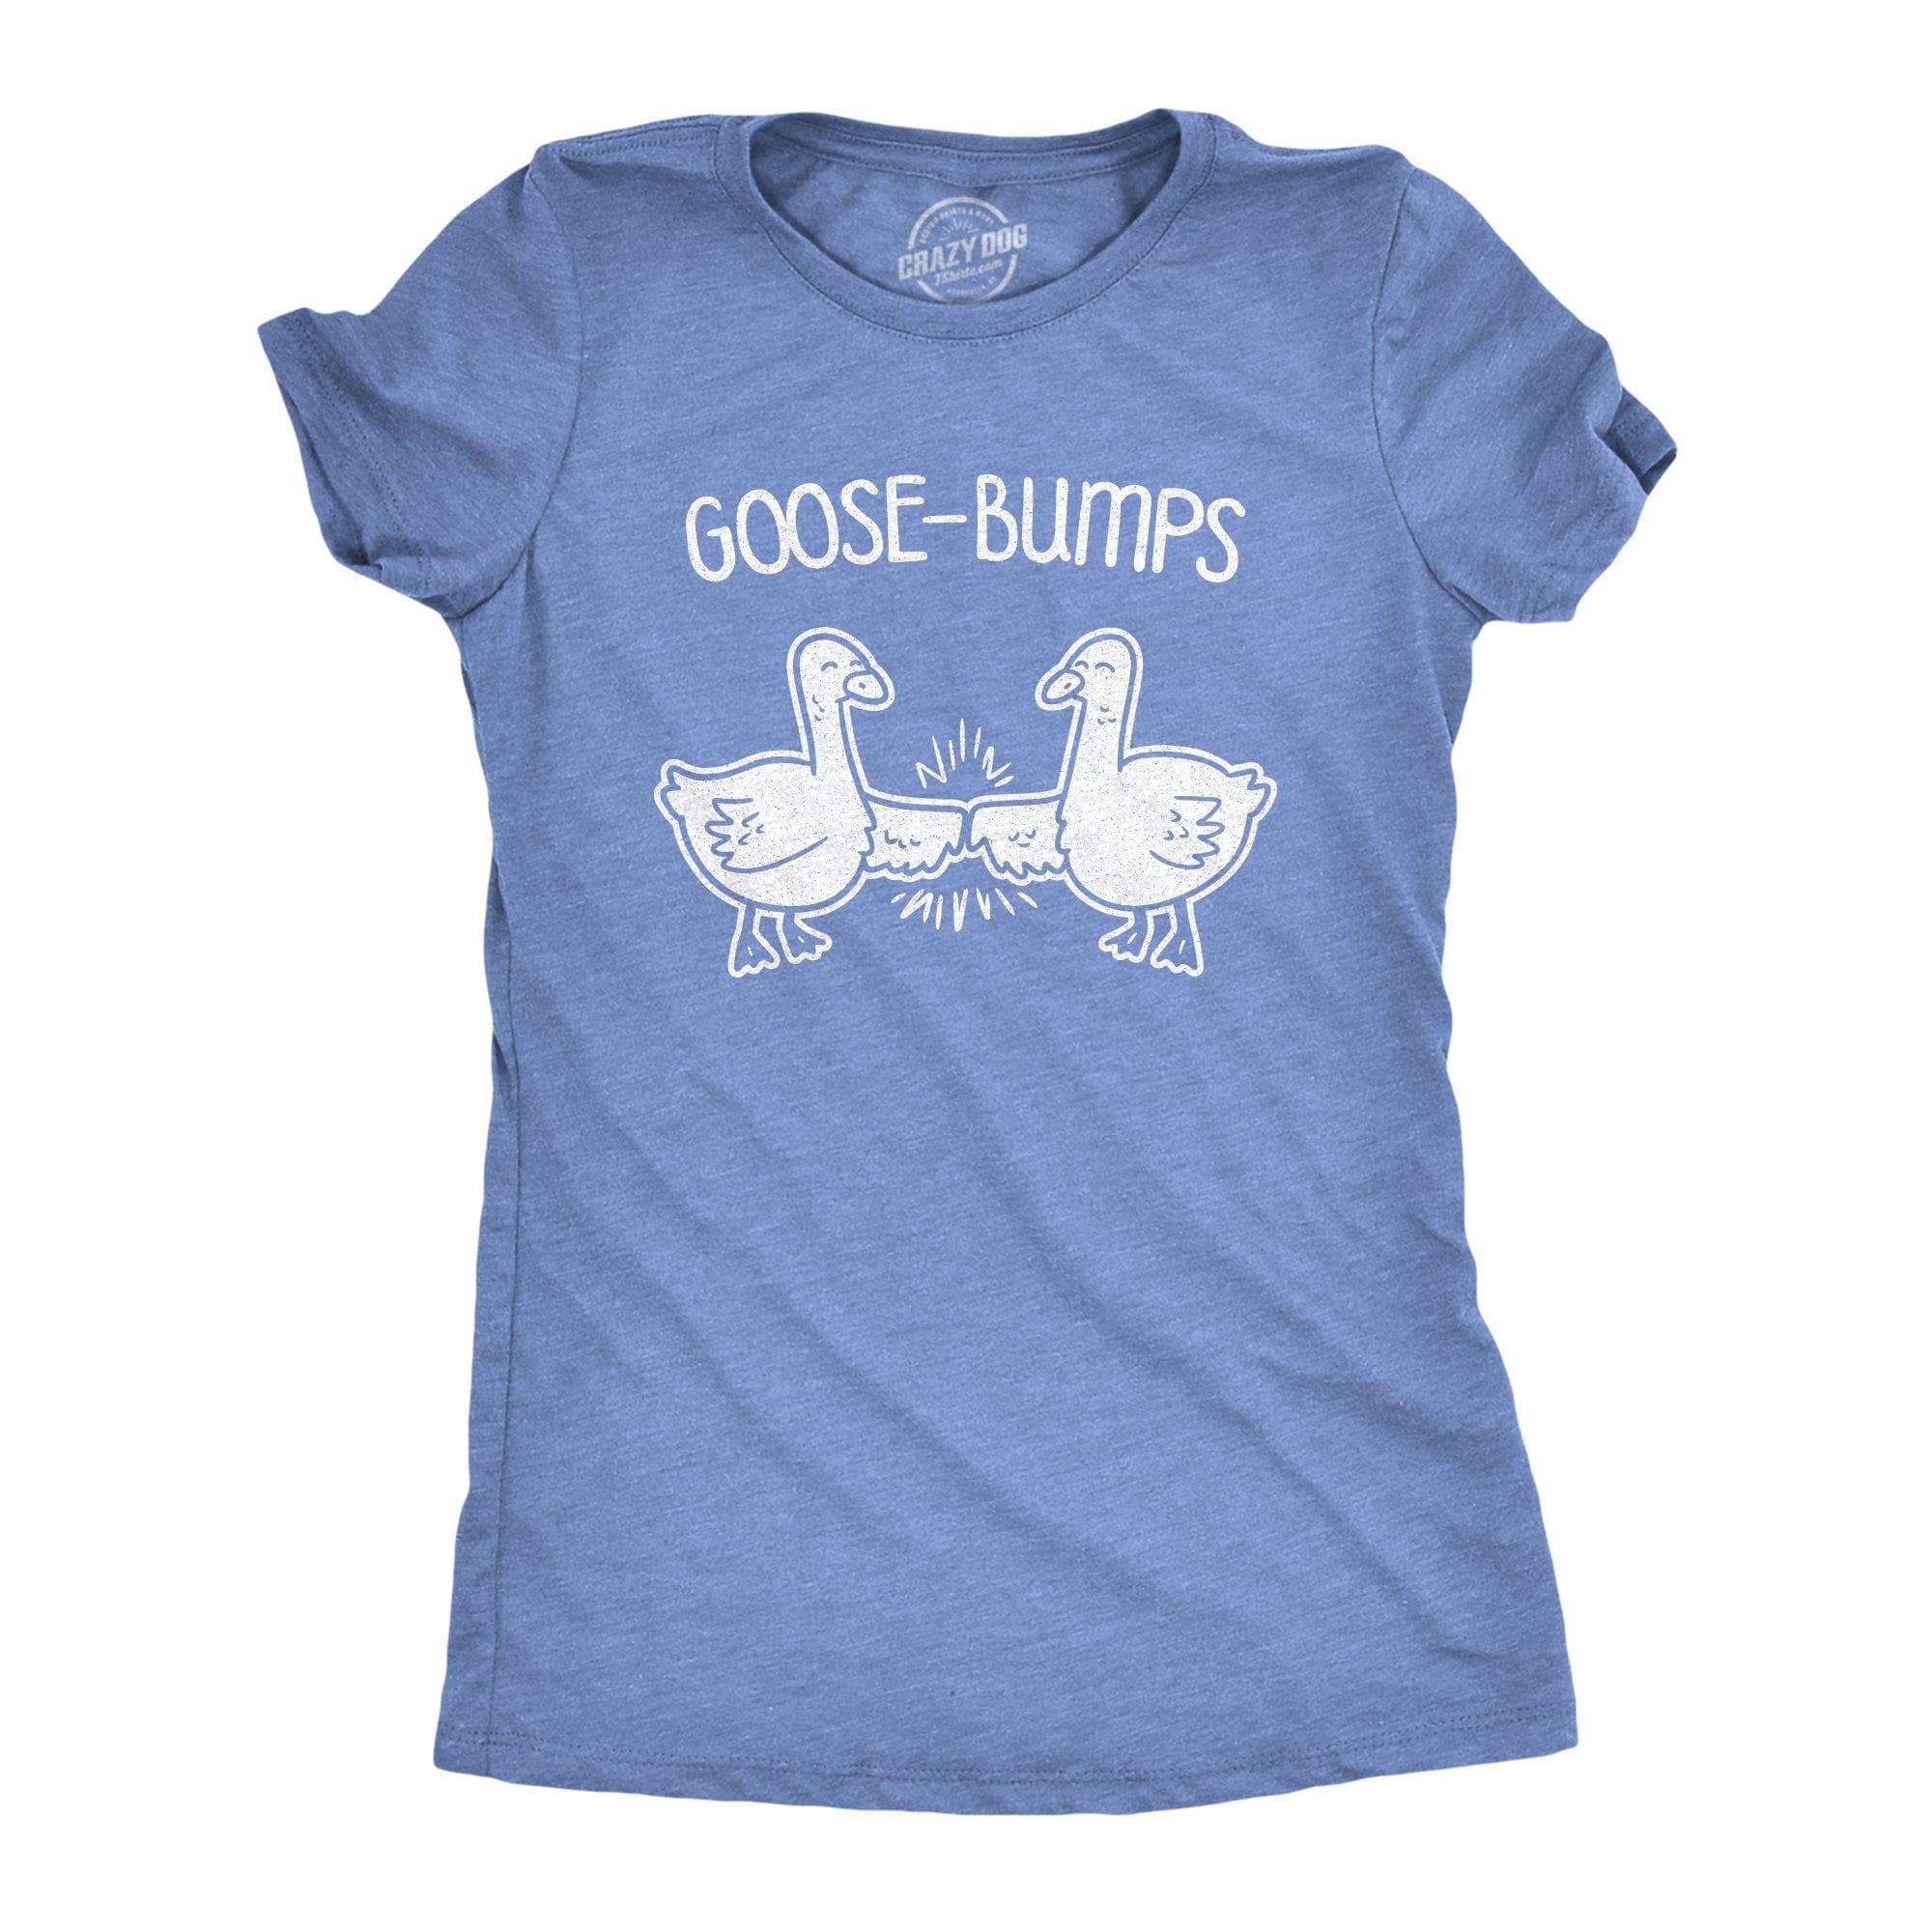 Goose-Bumps Women's Tshirt - Crazy Dog T-Shirts